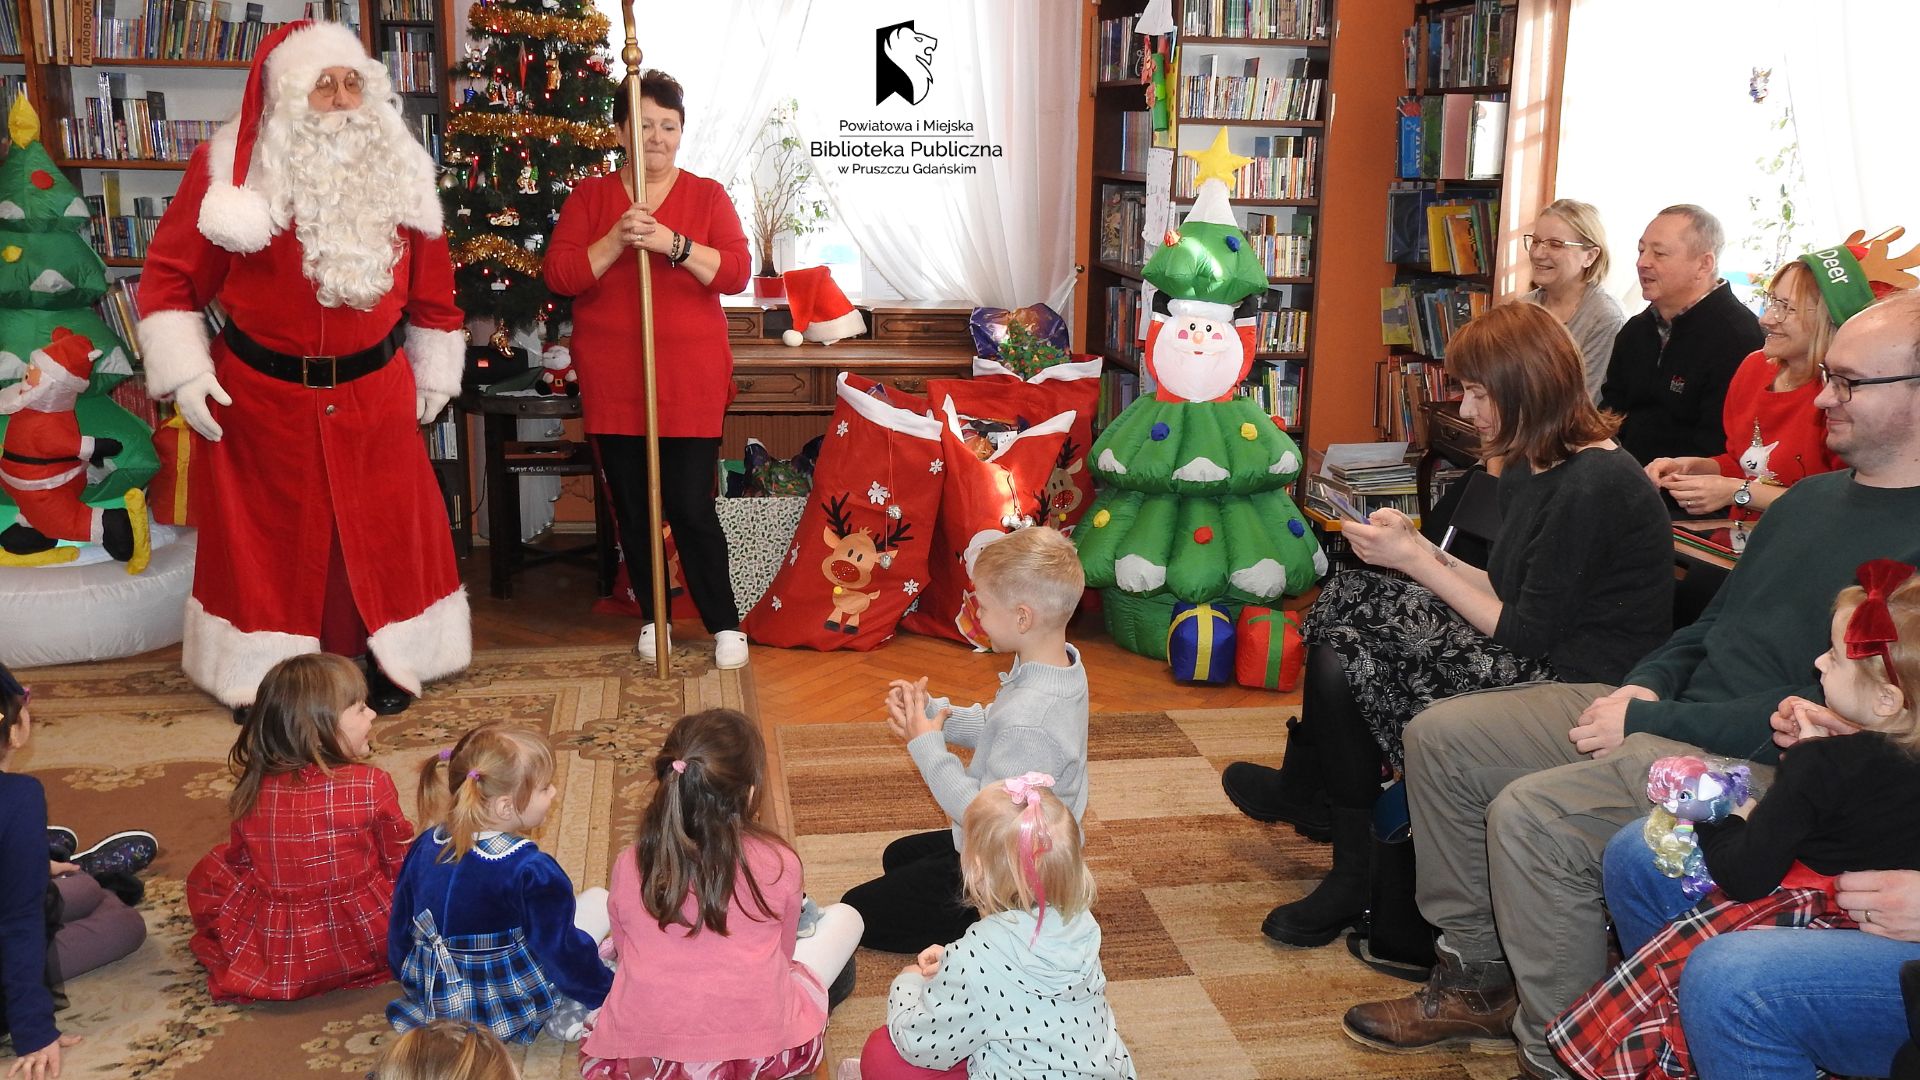 Na dywanie w bibliotece siedzą dzieci i patrzą w stronę mężczyzny w stroju Mikołaja. Obok mężczyzny stoi kobieta w czerwonym swetrze i trzyma laskę Mikołaja. Po prawej i lewej stronie stoją dmuchane ozdoby świąteczne: choinki, bałwany.